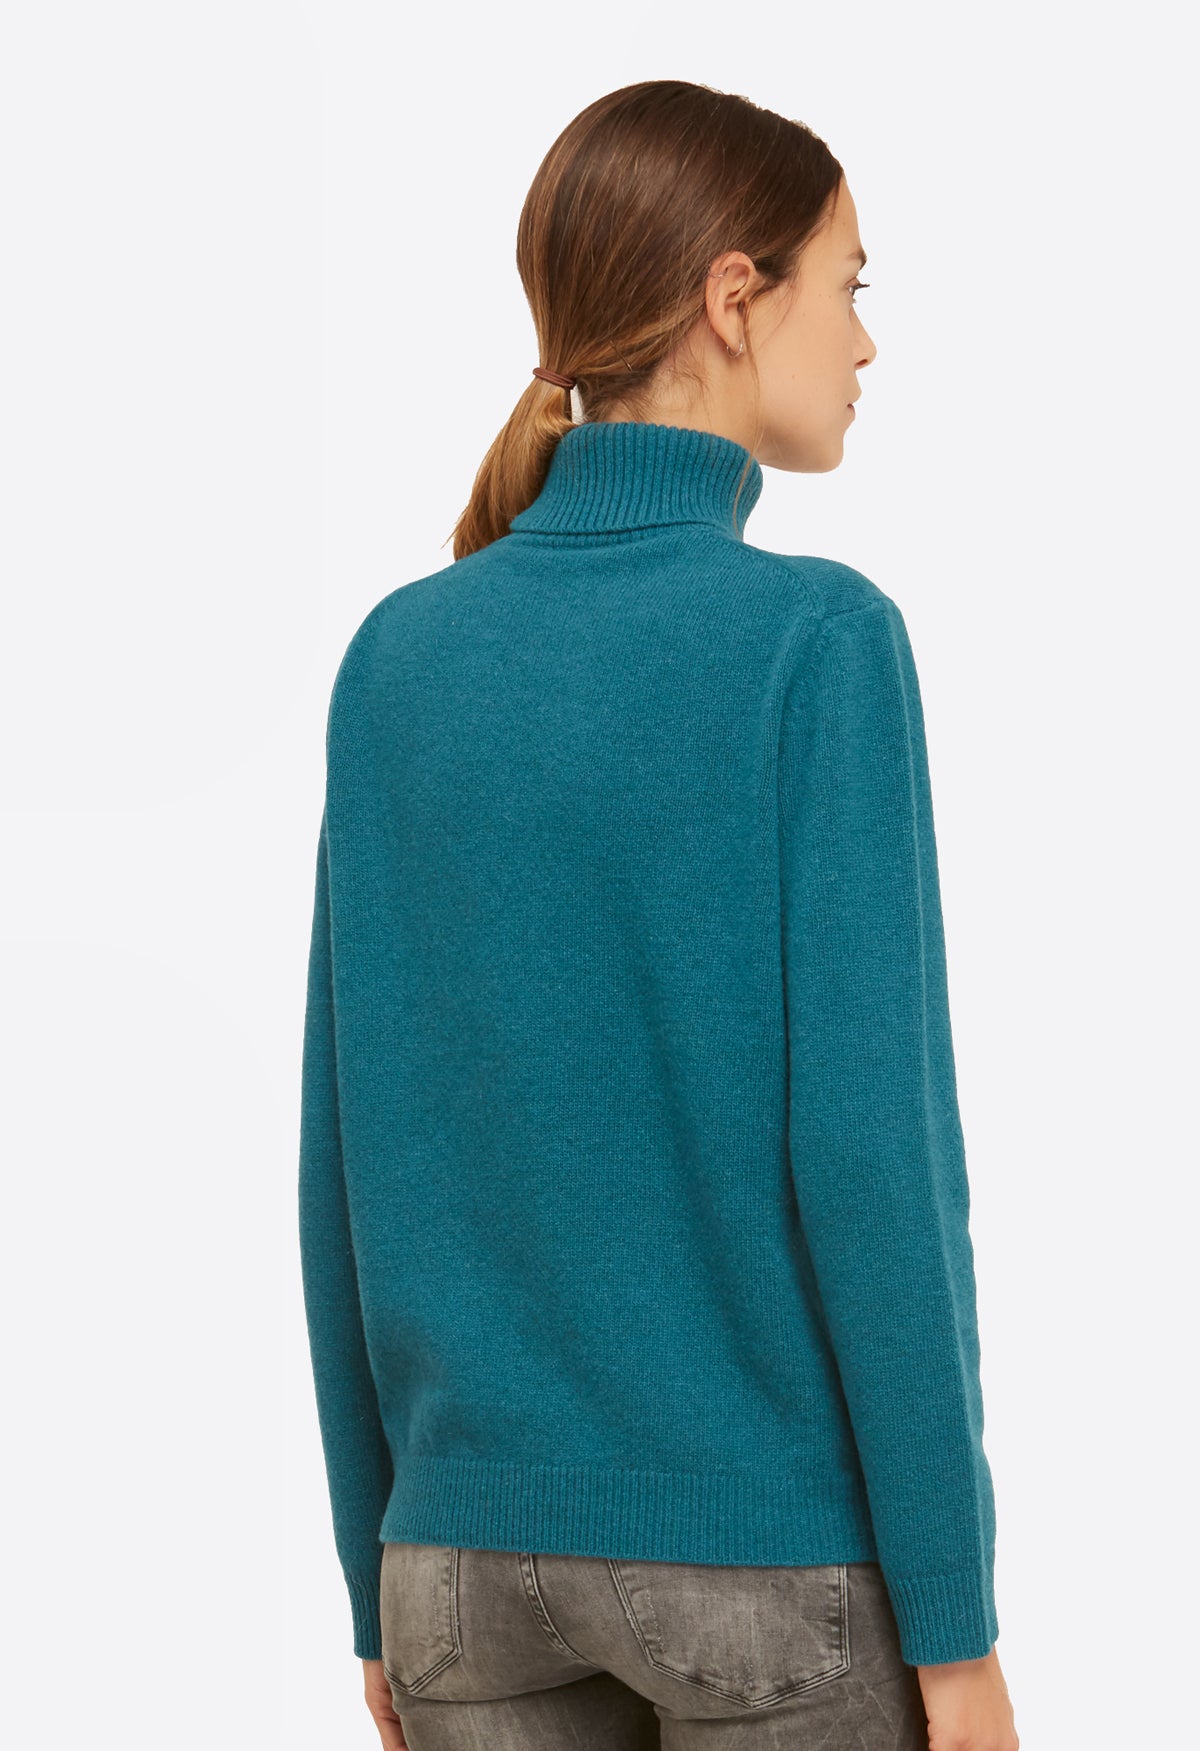 Il dolcevita è la maglia donna coccola moda inverno 2020